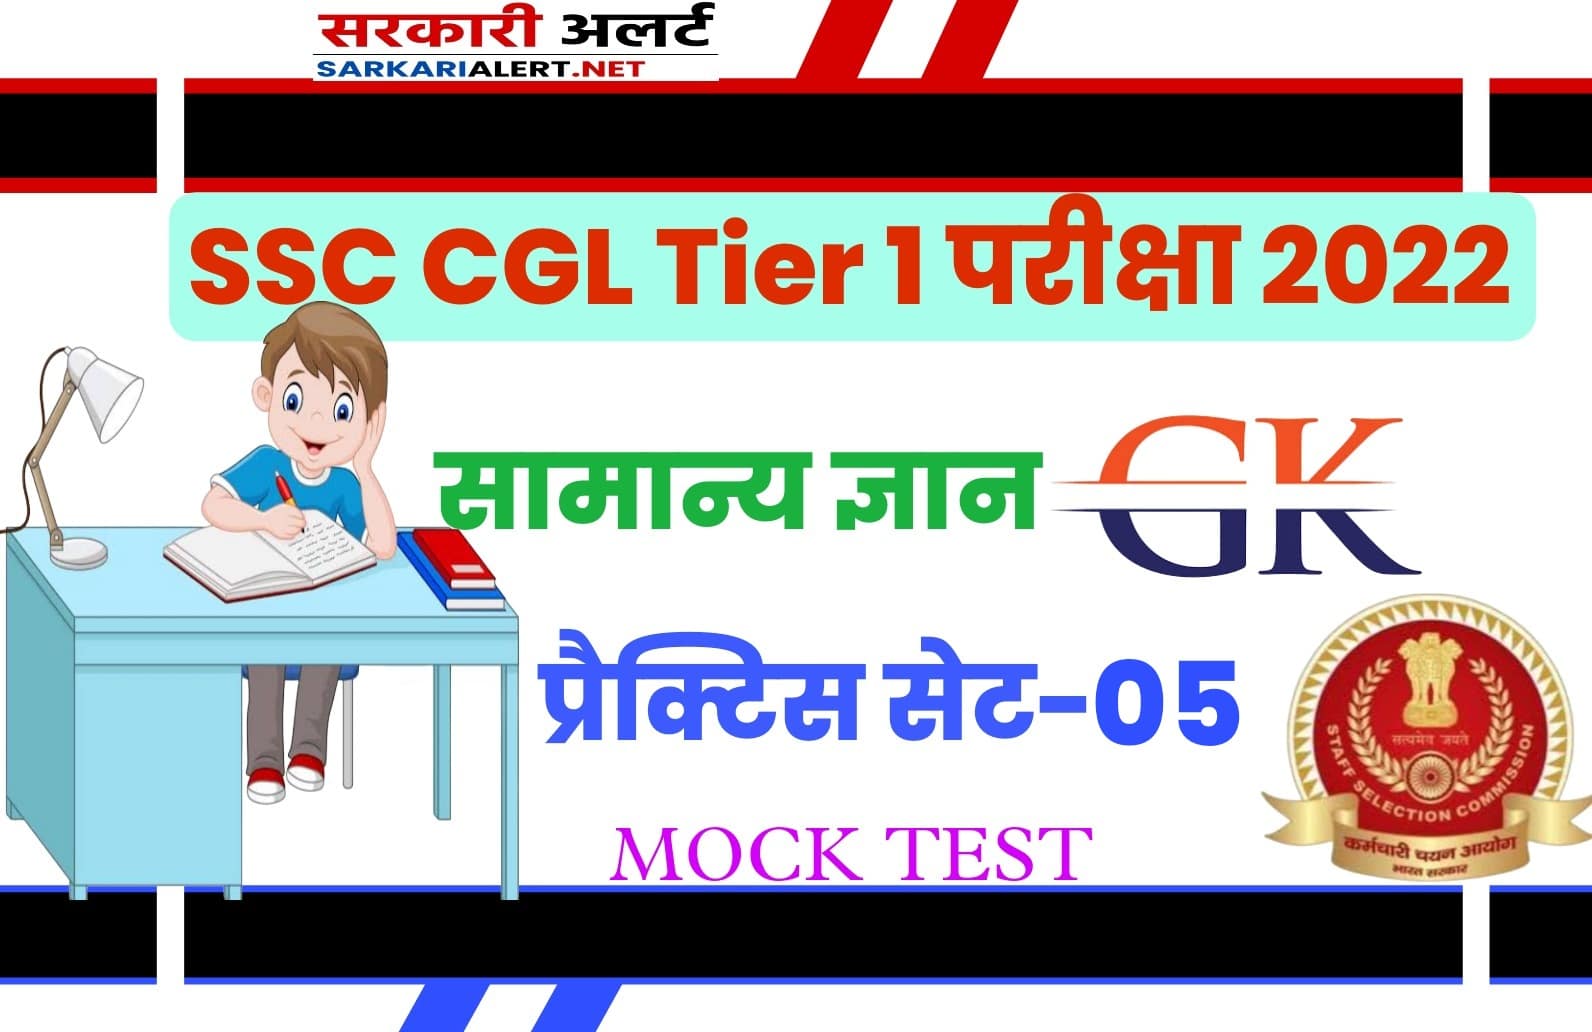 SSC CGL Tier I Exam 2022 GK Most Important Question with Answer gk Practice Set 05 | एसएससी सीजीएल के लिए सबसे महत्वपूर्ण प्रश्न और उत्तर, जरूर पढ़ें